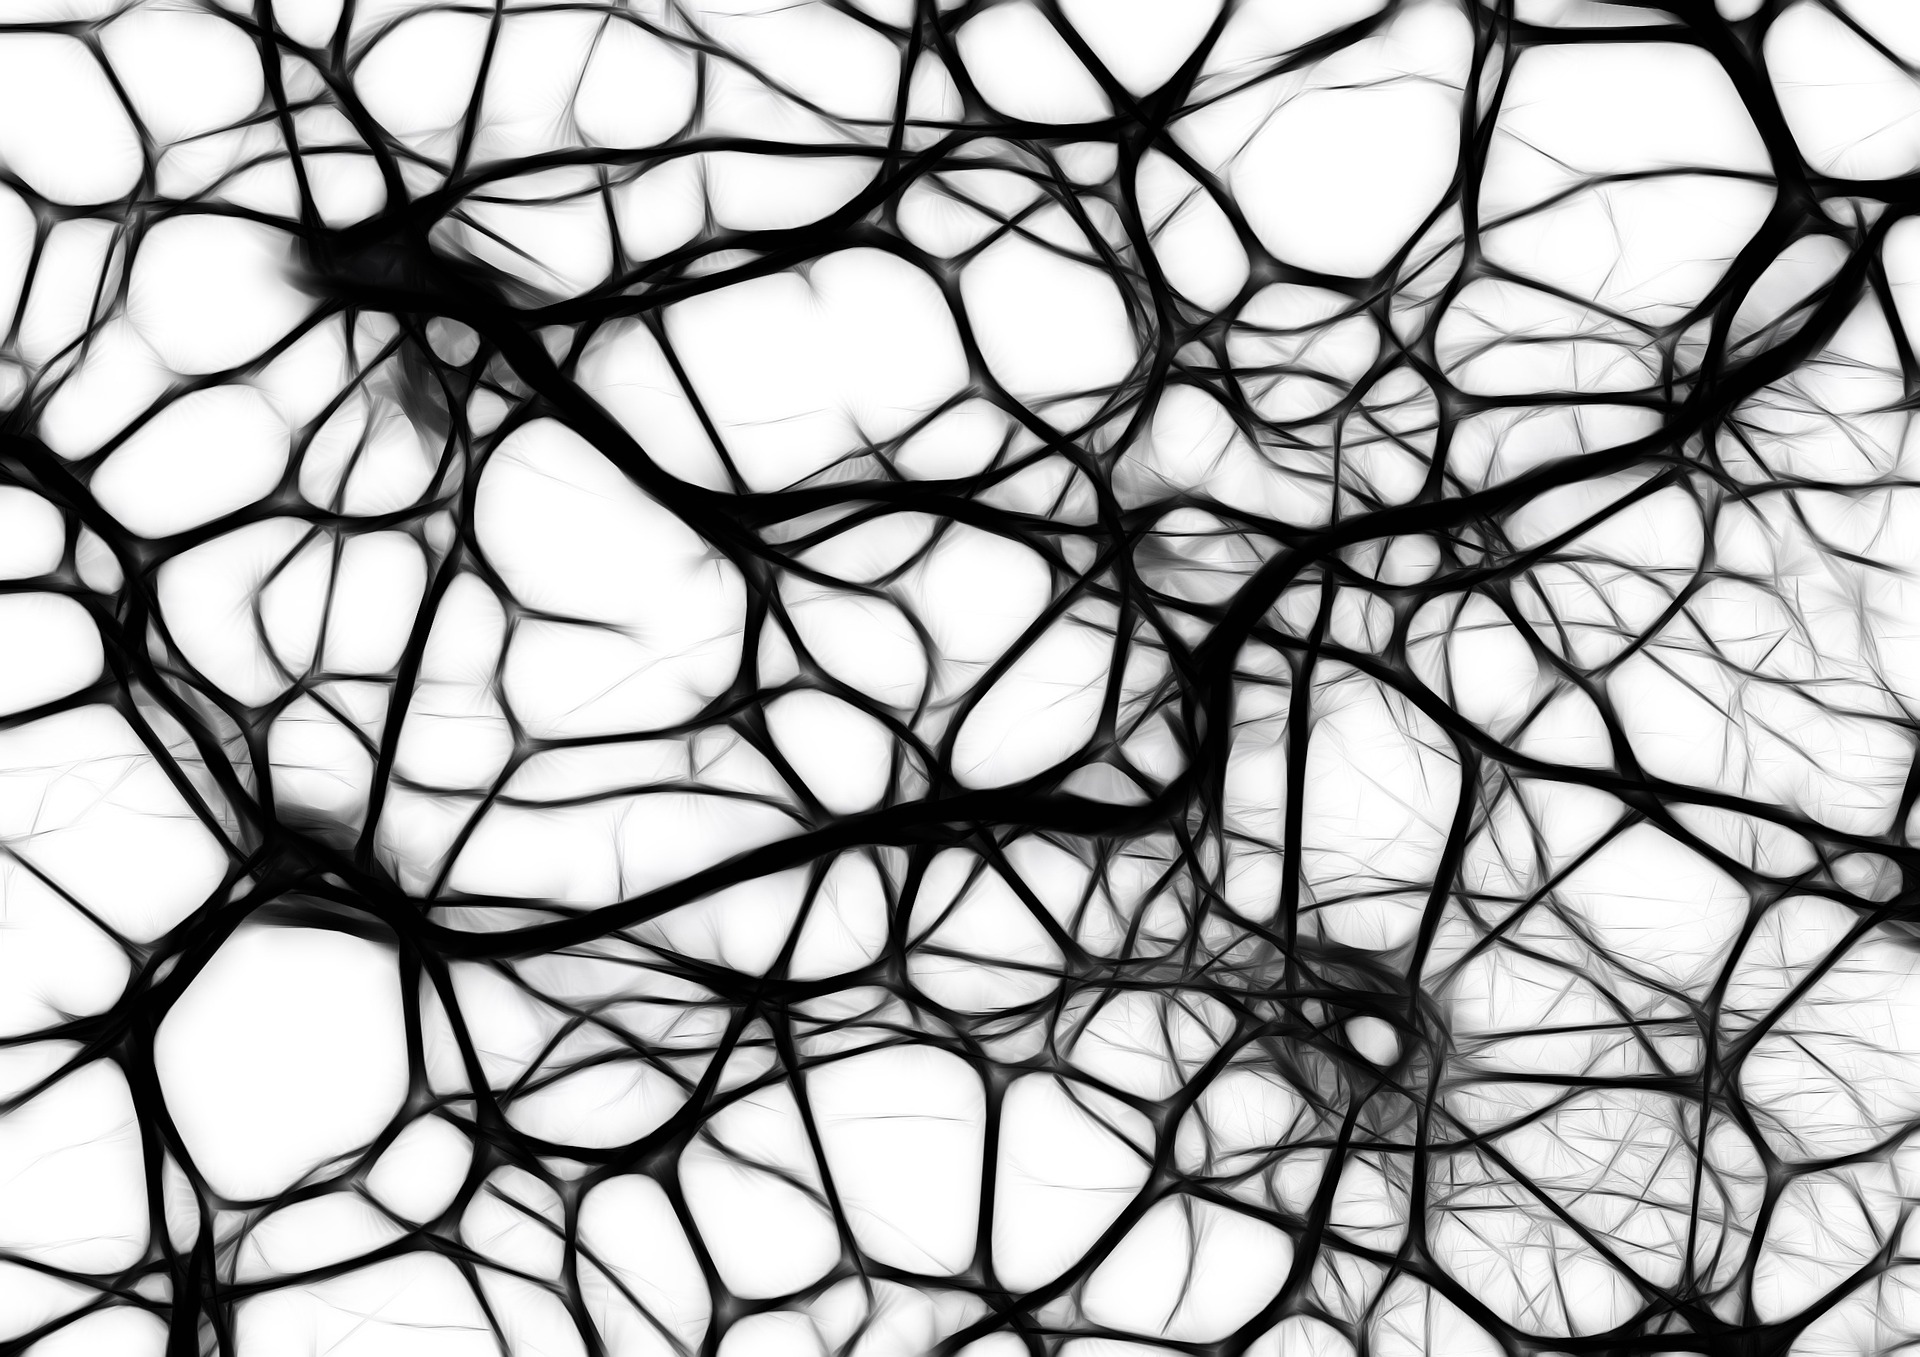 Das menschliche neuronale Netz stand Pate bei der Entwicklung der künstlichen neuronalen Netze für die Regelung von solarthermischen Heizungsanlagen. Quelle: Pixabay